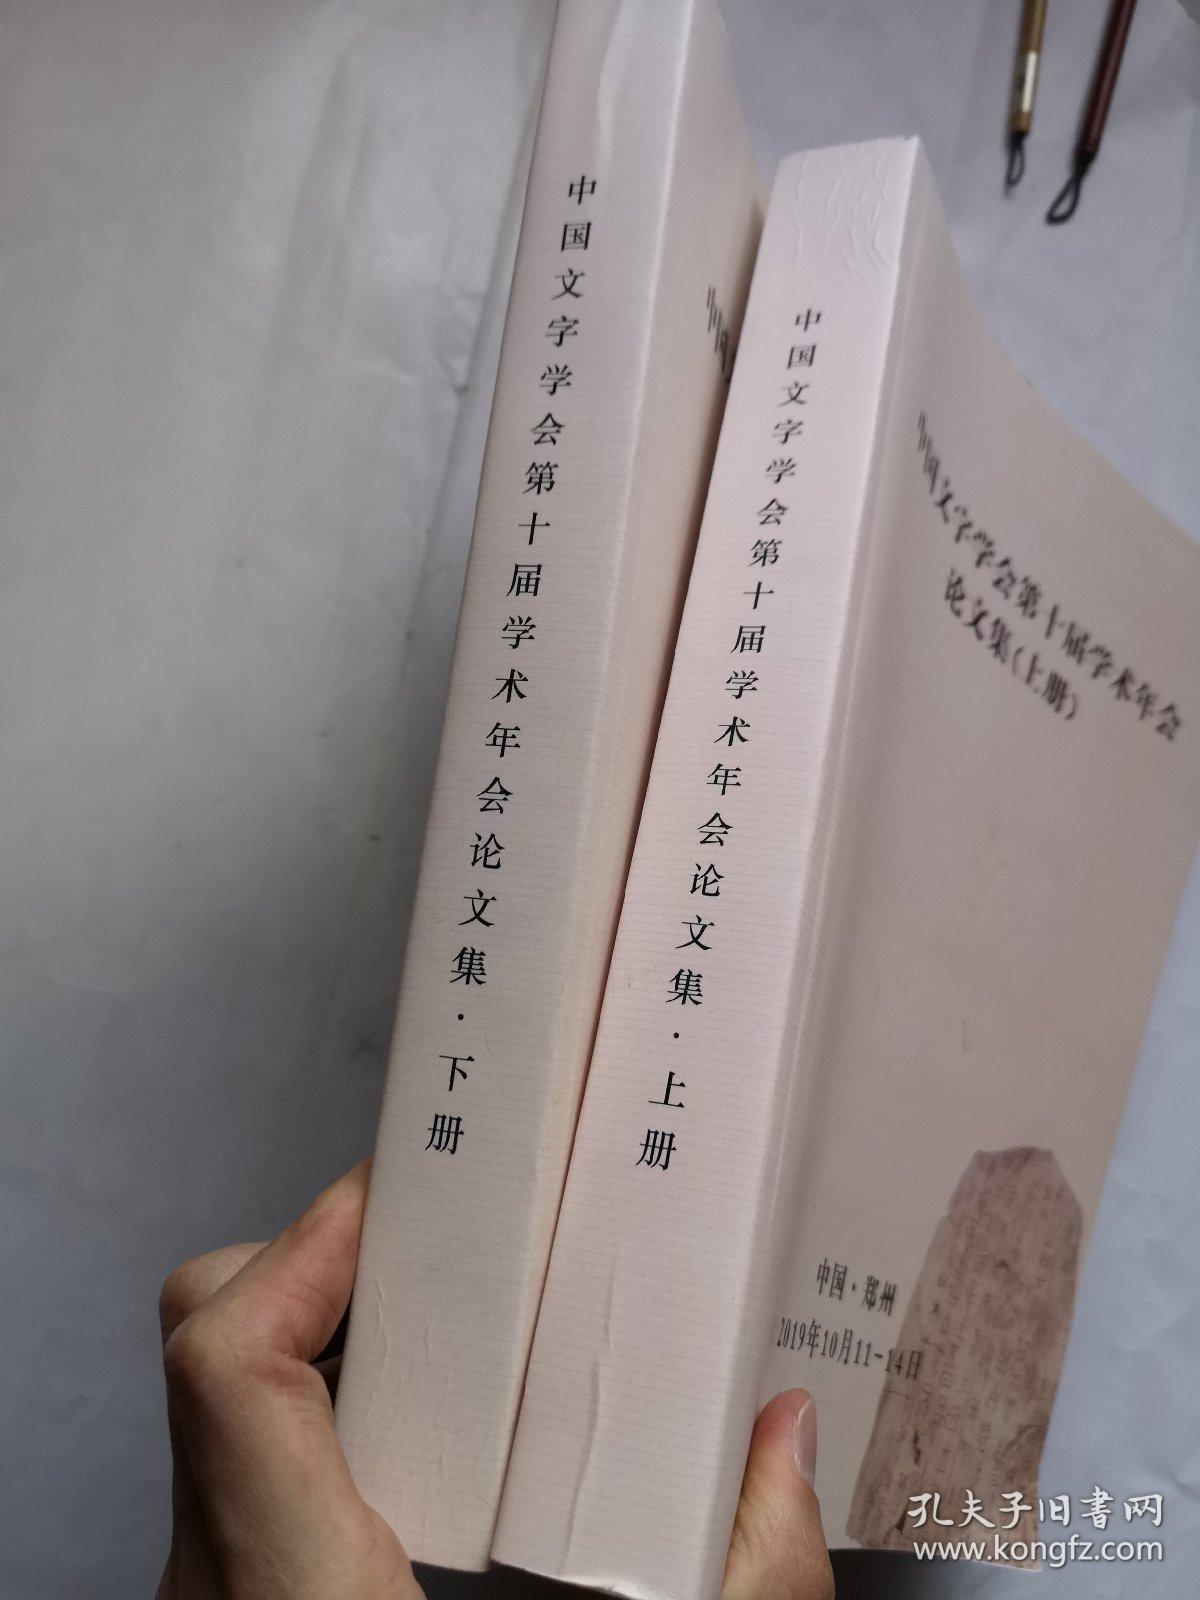 中国文字学会第十届学术年会论文集 上下两册全合售（16开两厚册）